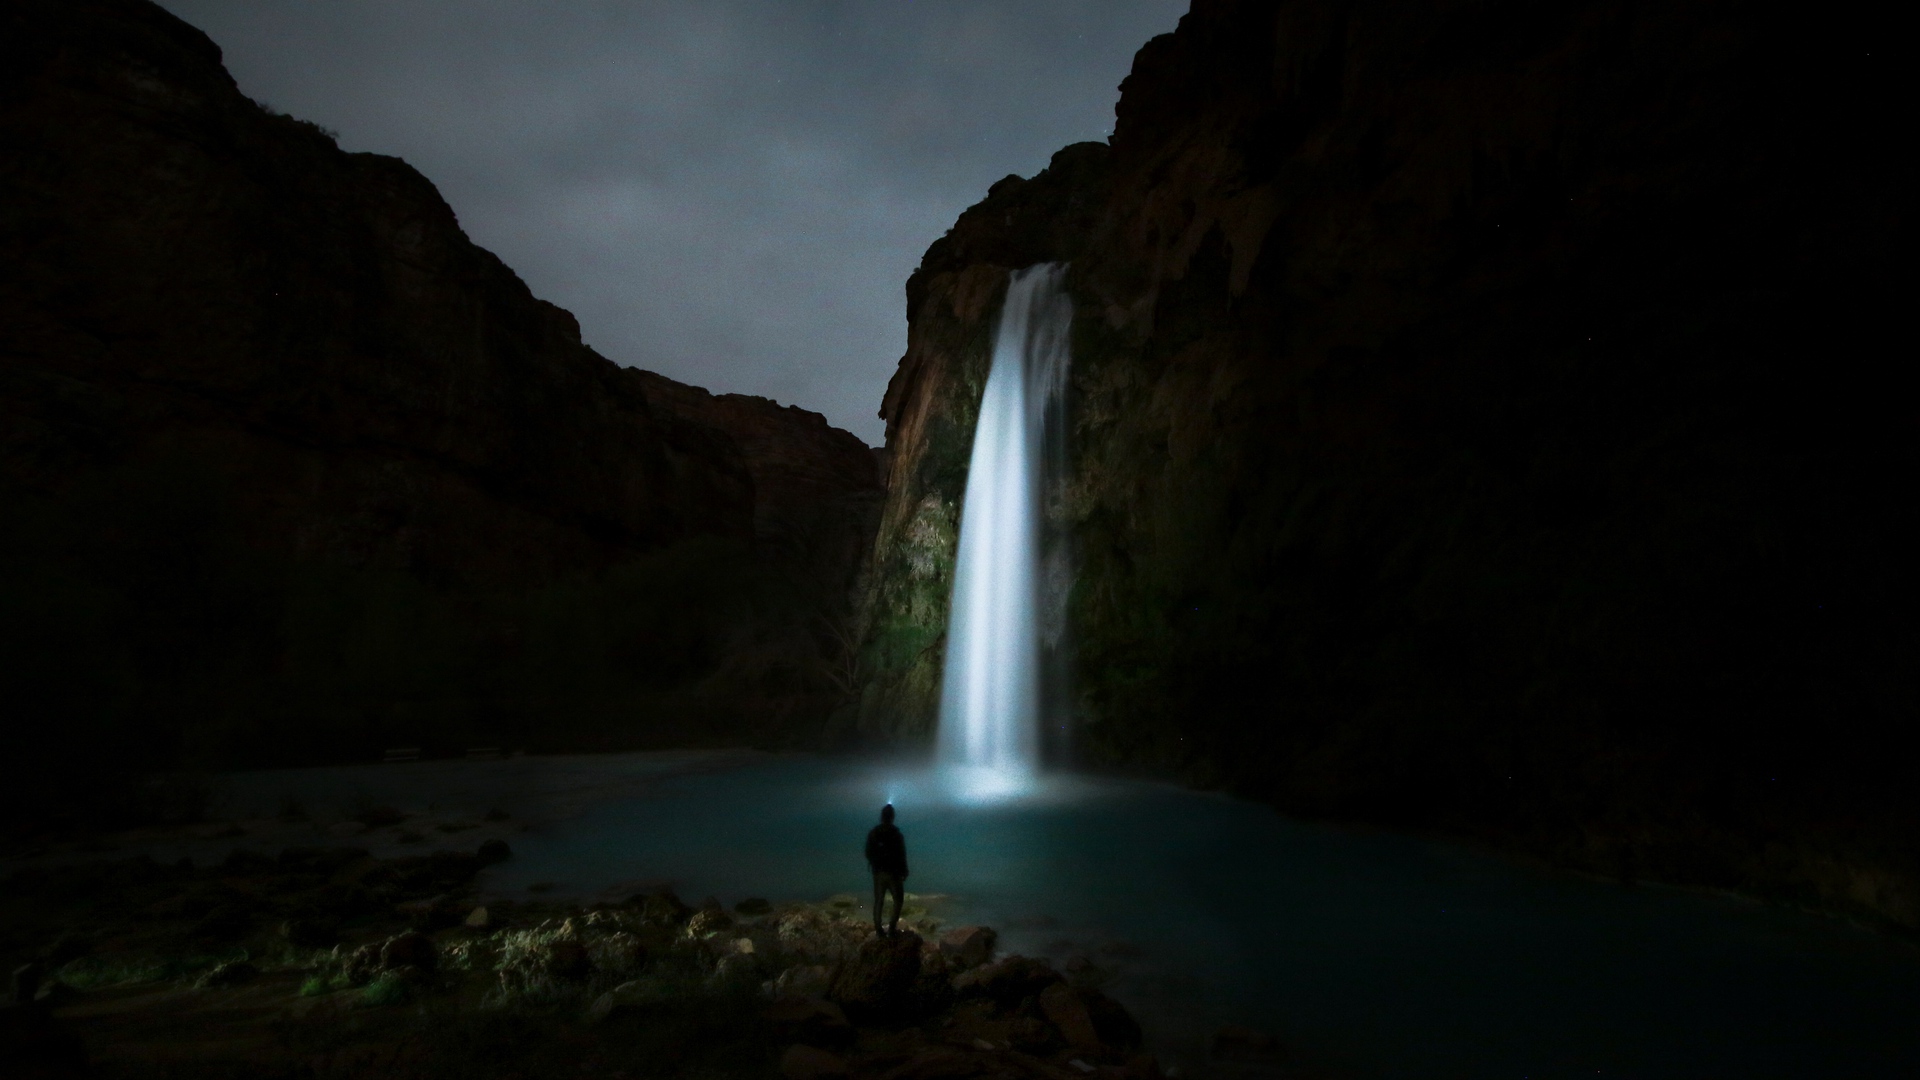 Man Enjoying Waterfall Nature View At Night - Namaz E Shab Quotes - HD Wallpaper 